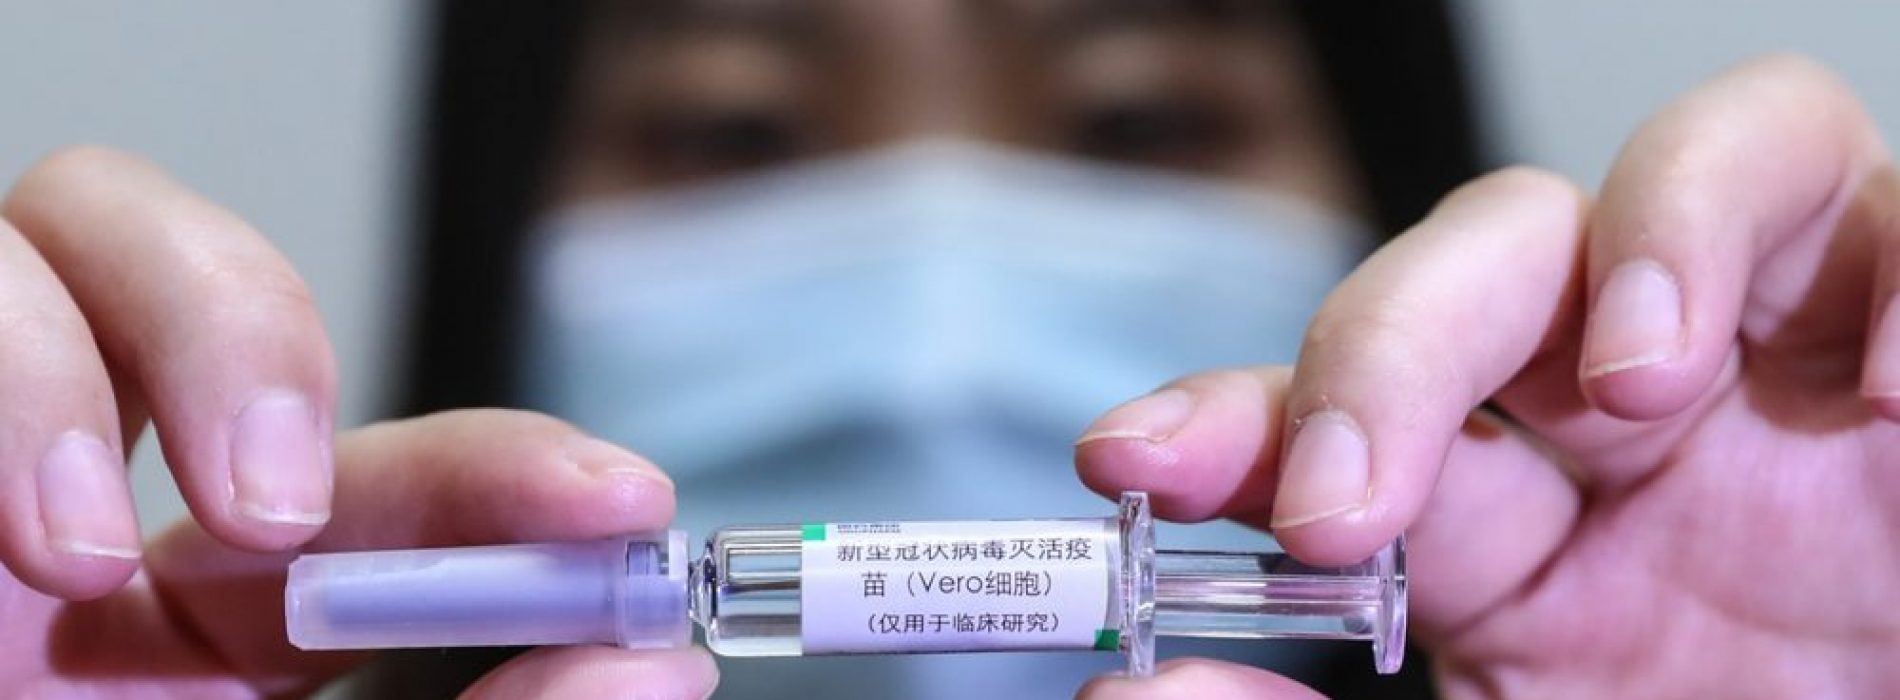 COVID-prik kan leiden tot VERNIETIGENDE gevolgen op lange termijn, waarschuwt Nobelprijswinnaar viroloog